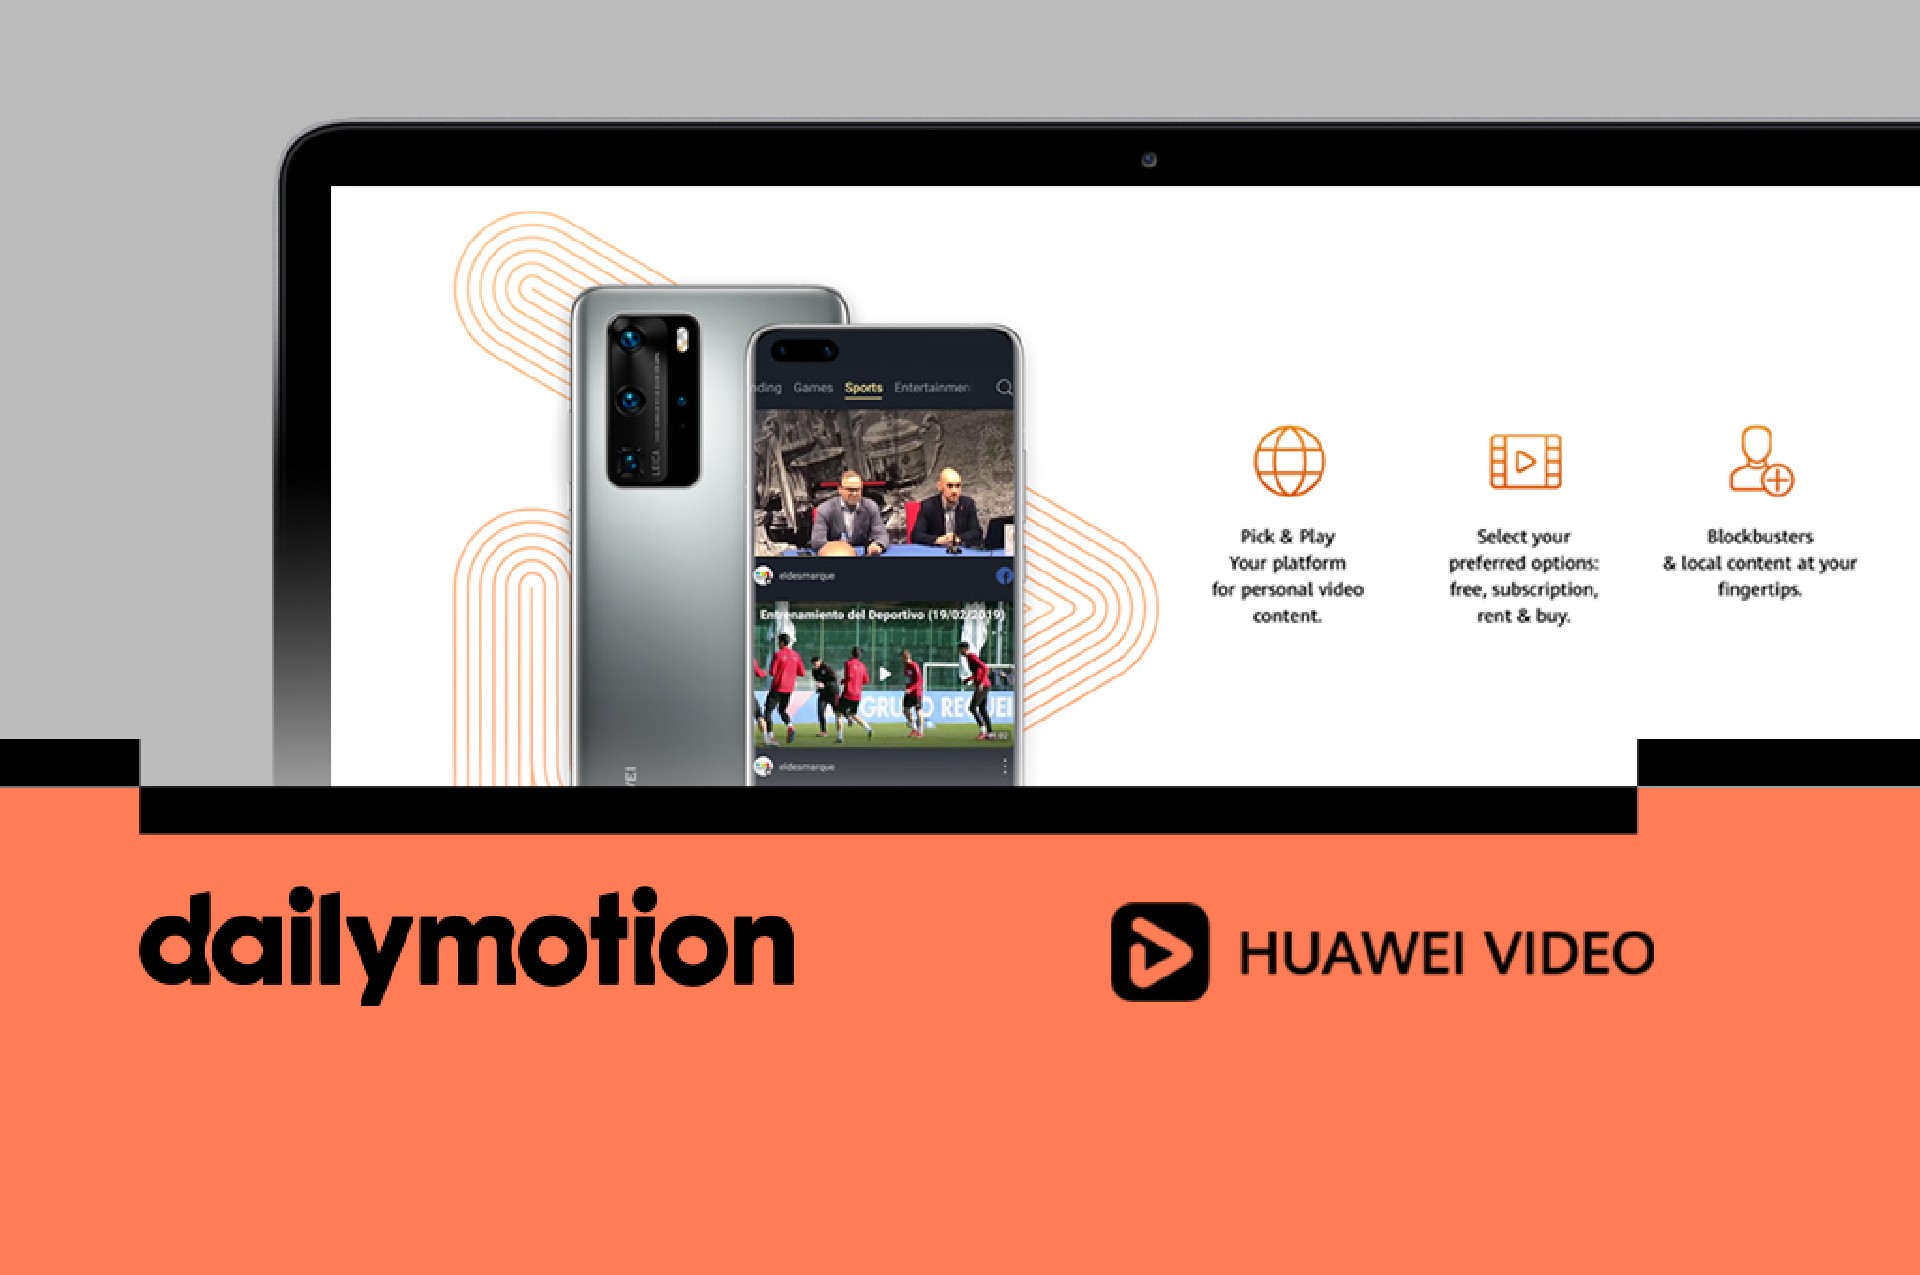 صورة هواوي تتعاون مع Dailymotion لتقديم خدماتها في هواتفها وداخل تطبيقاتها